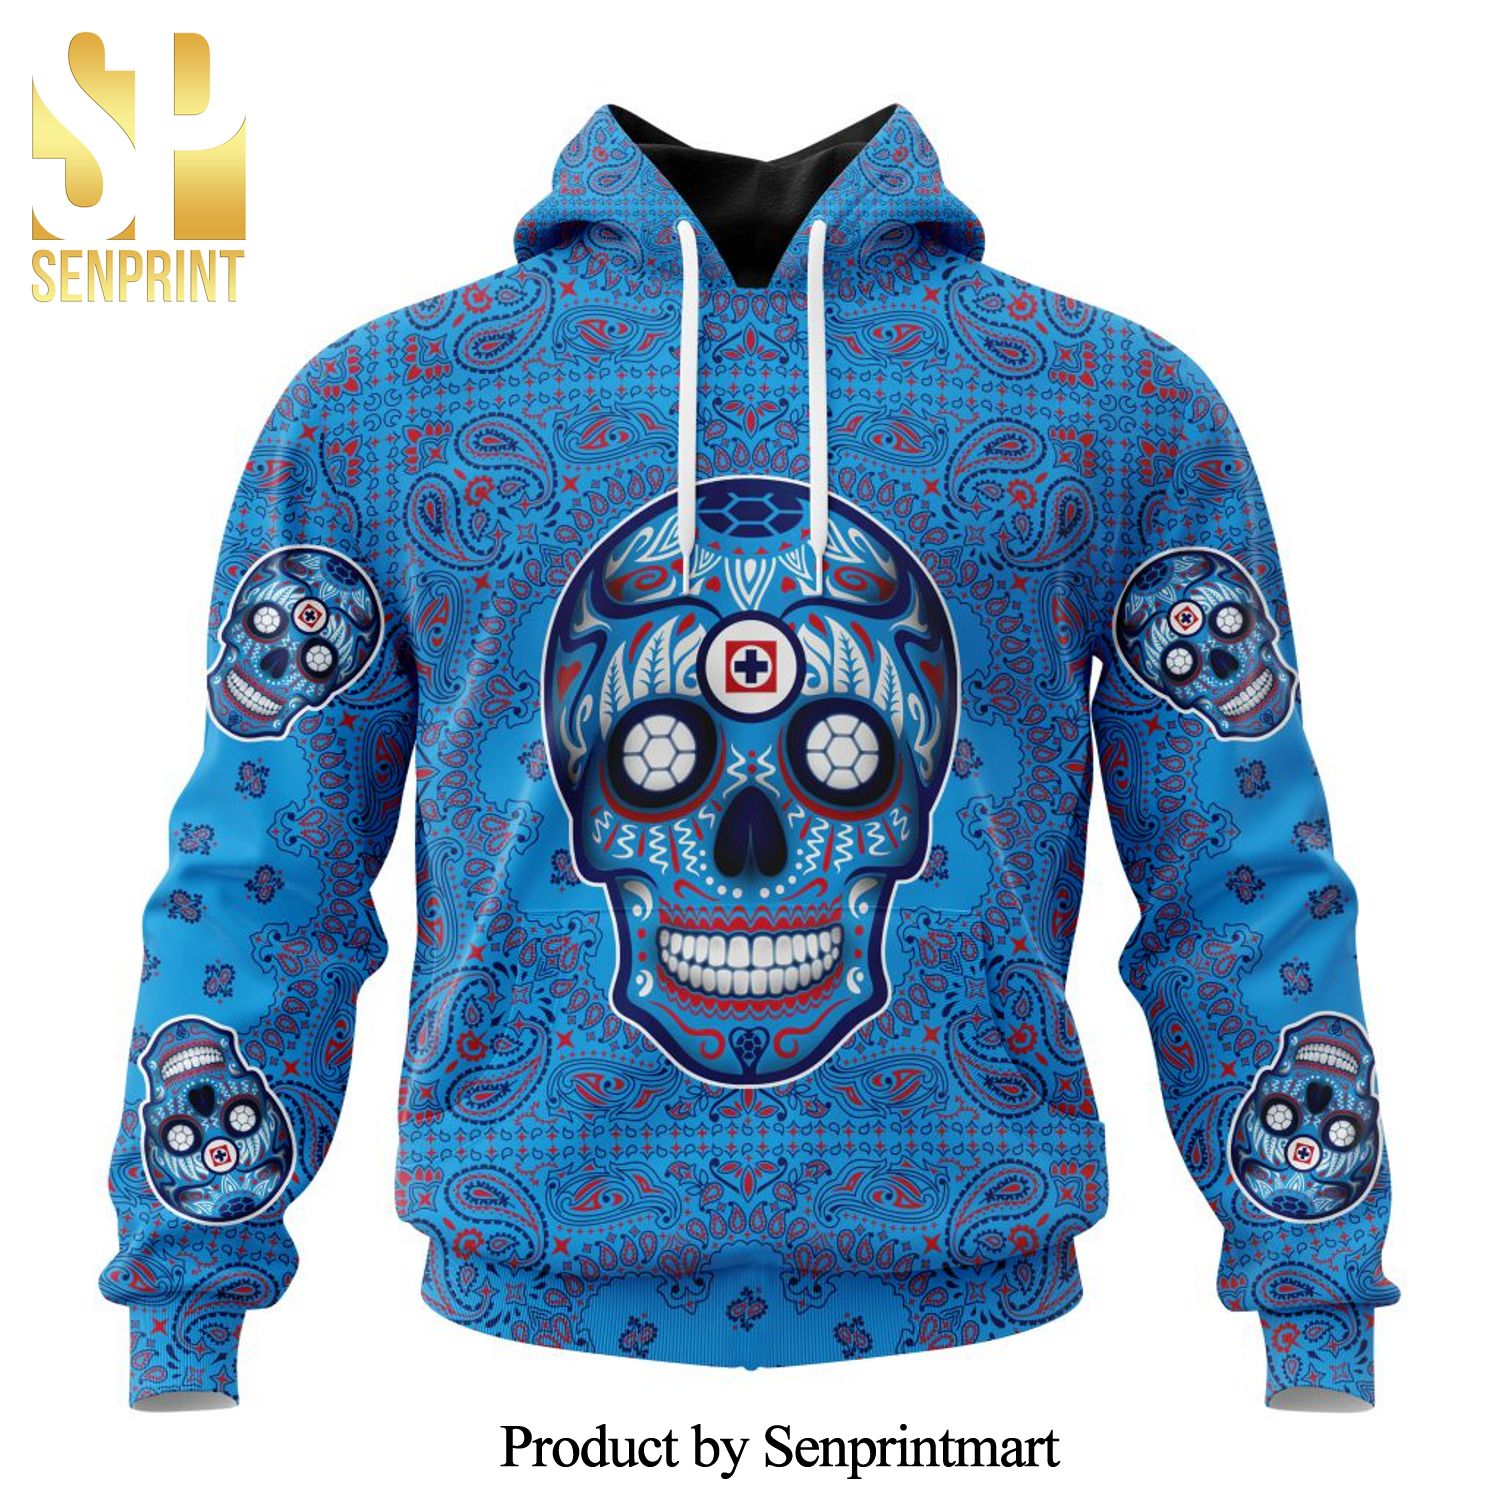 LIGA MX Cruz Azul Version Sugar Skull Full Printing Shirt